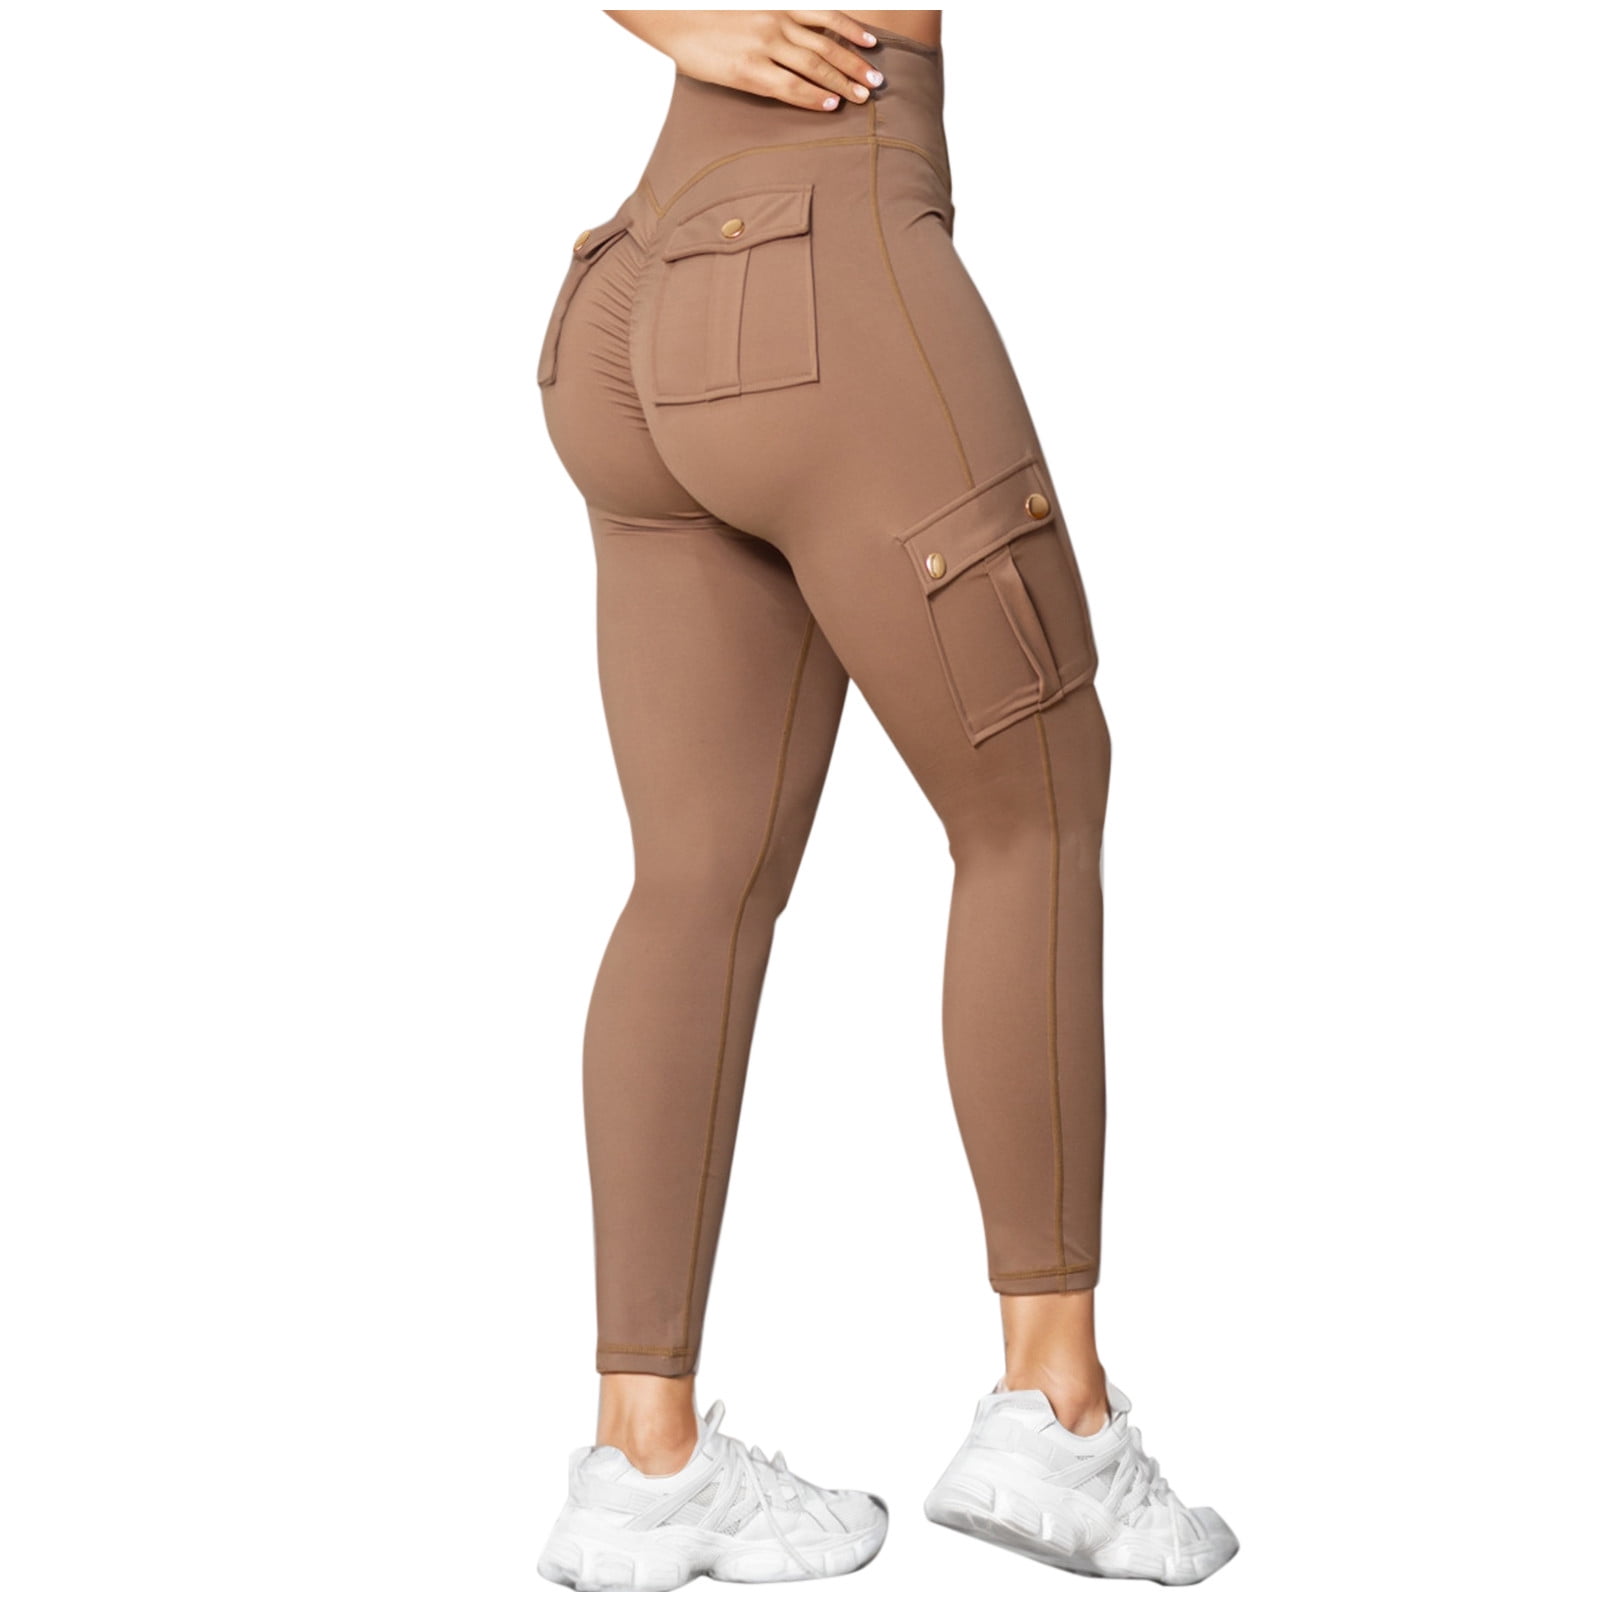 YYDGH Womens Scrunch Butt Leggings with Pockets High Waist Cargo